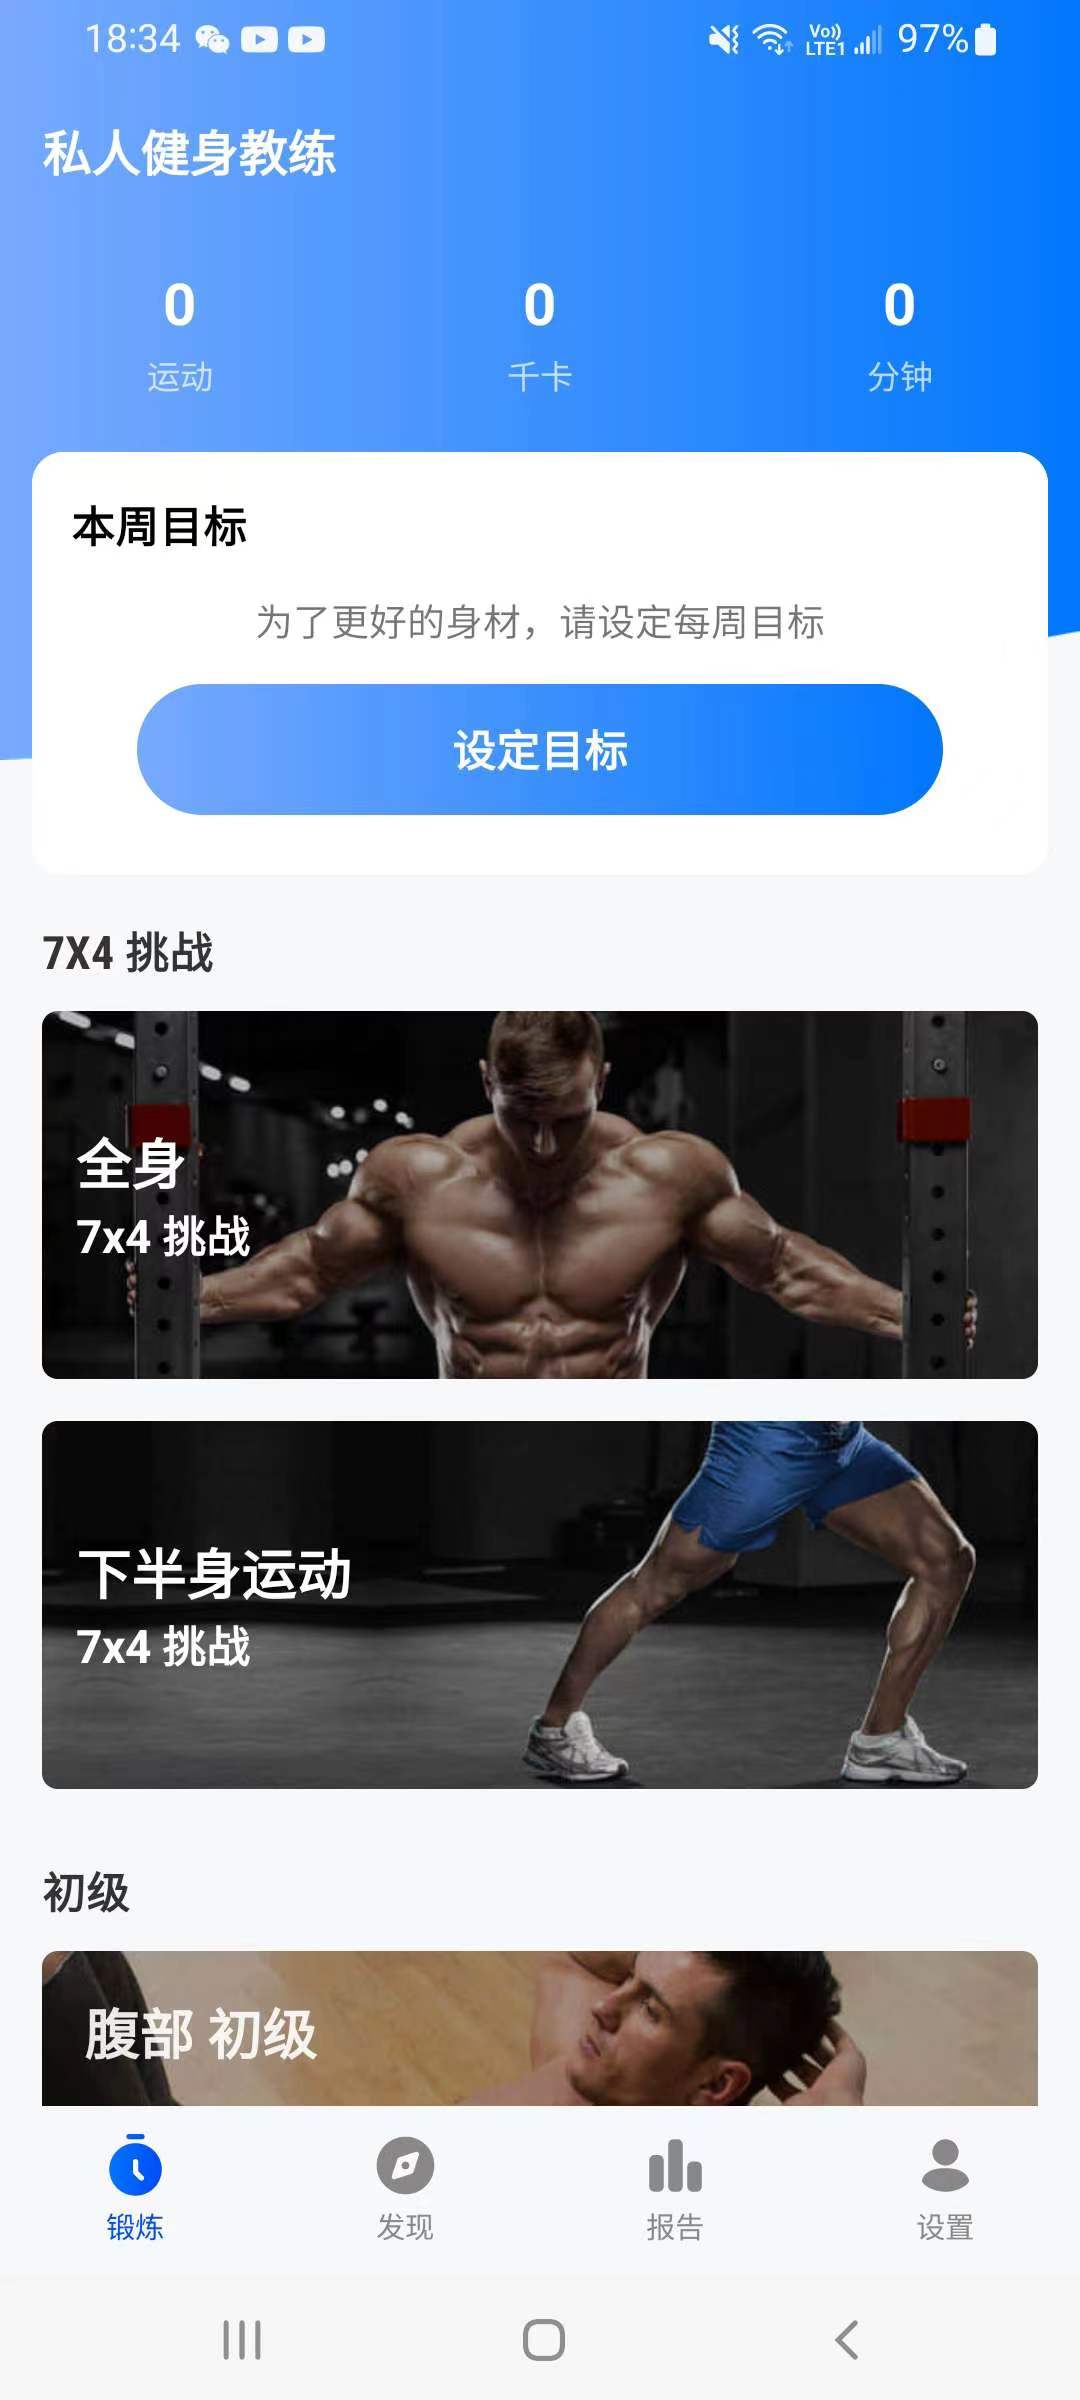 私人健身教练1.2.8解锁VIP会员 屠城辅助网www.tcfz1.com2639